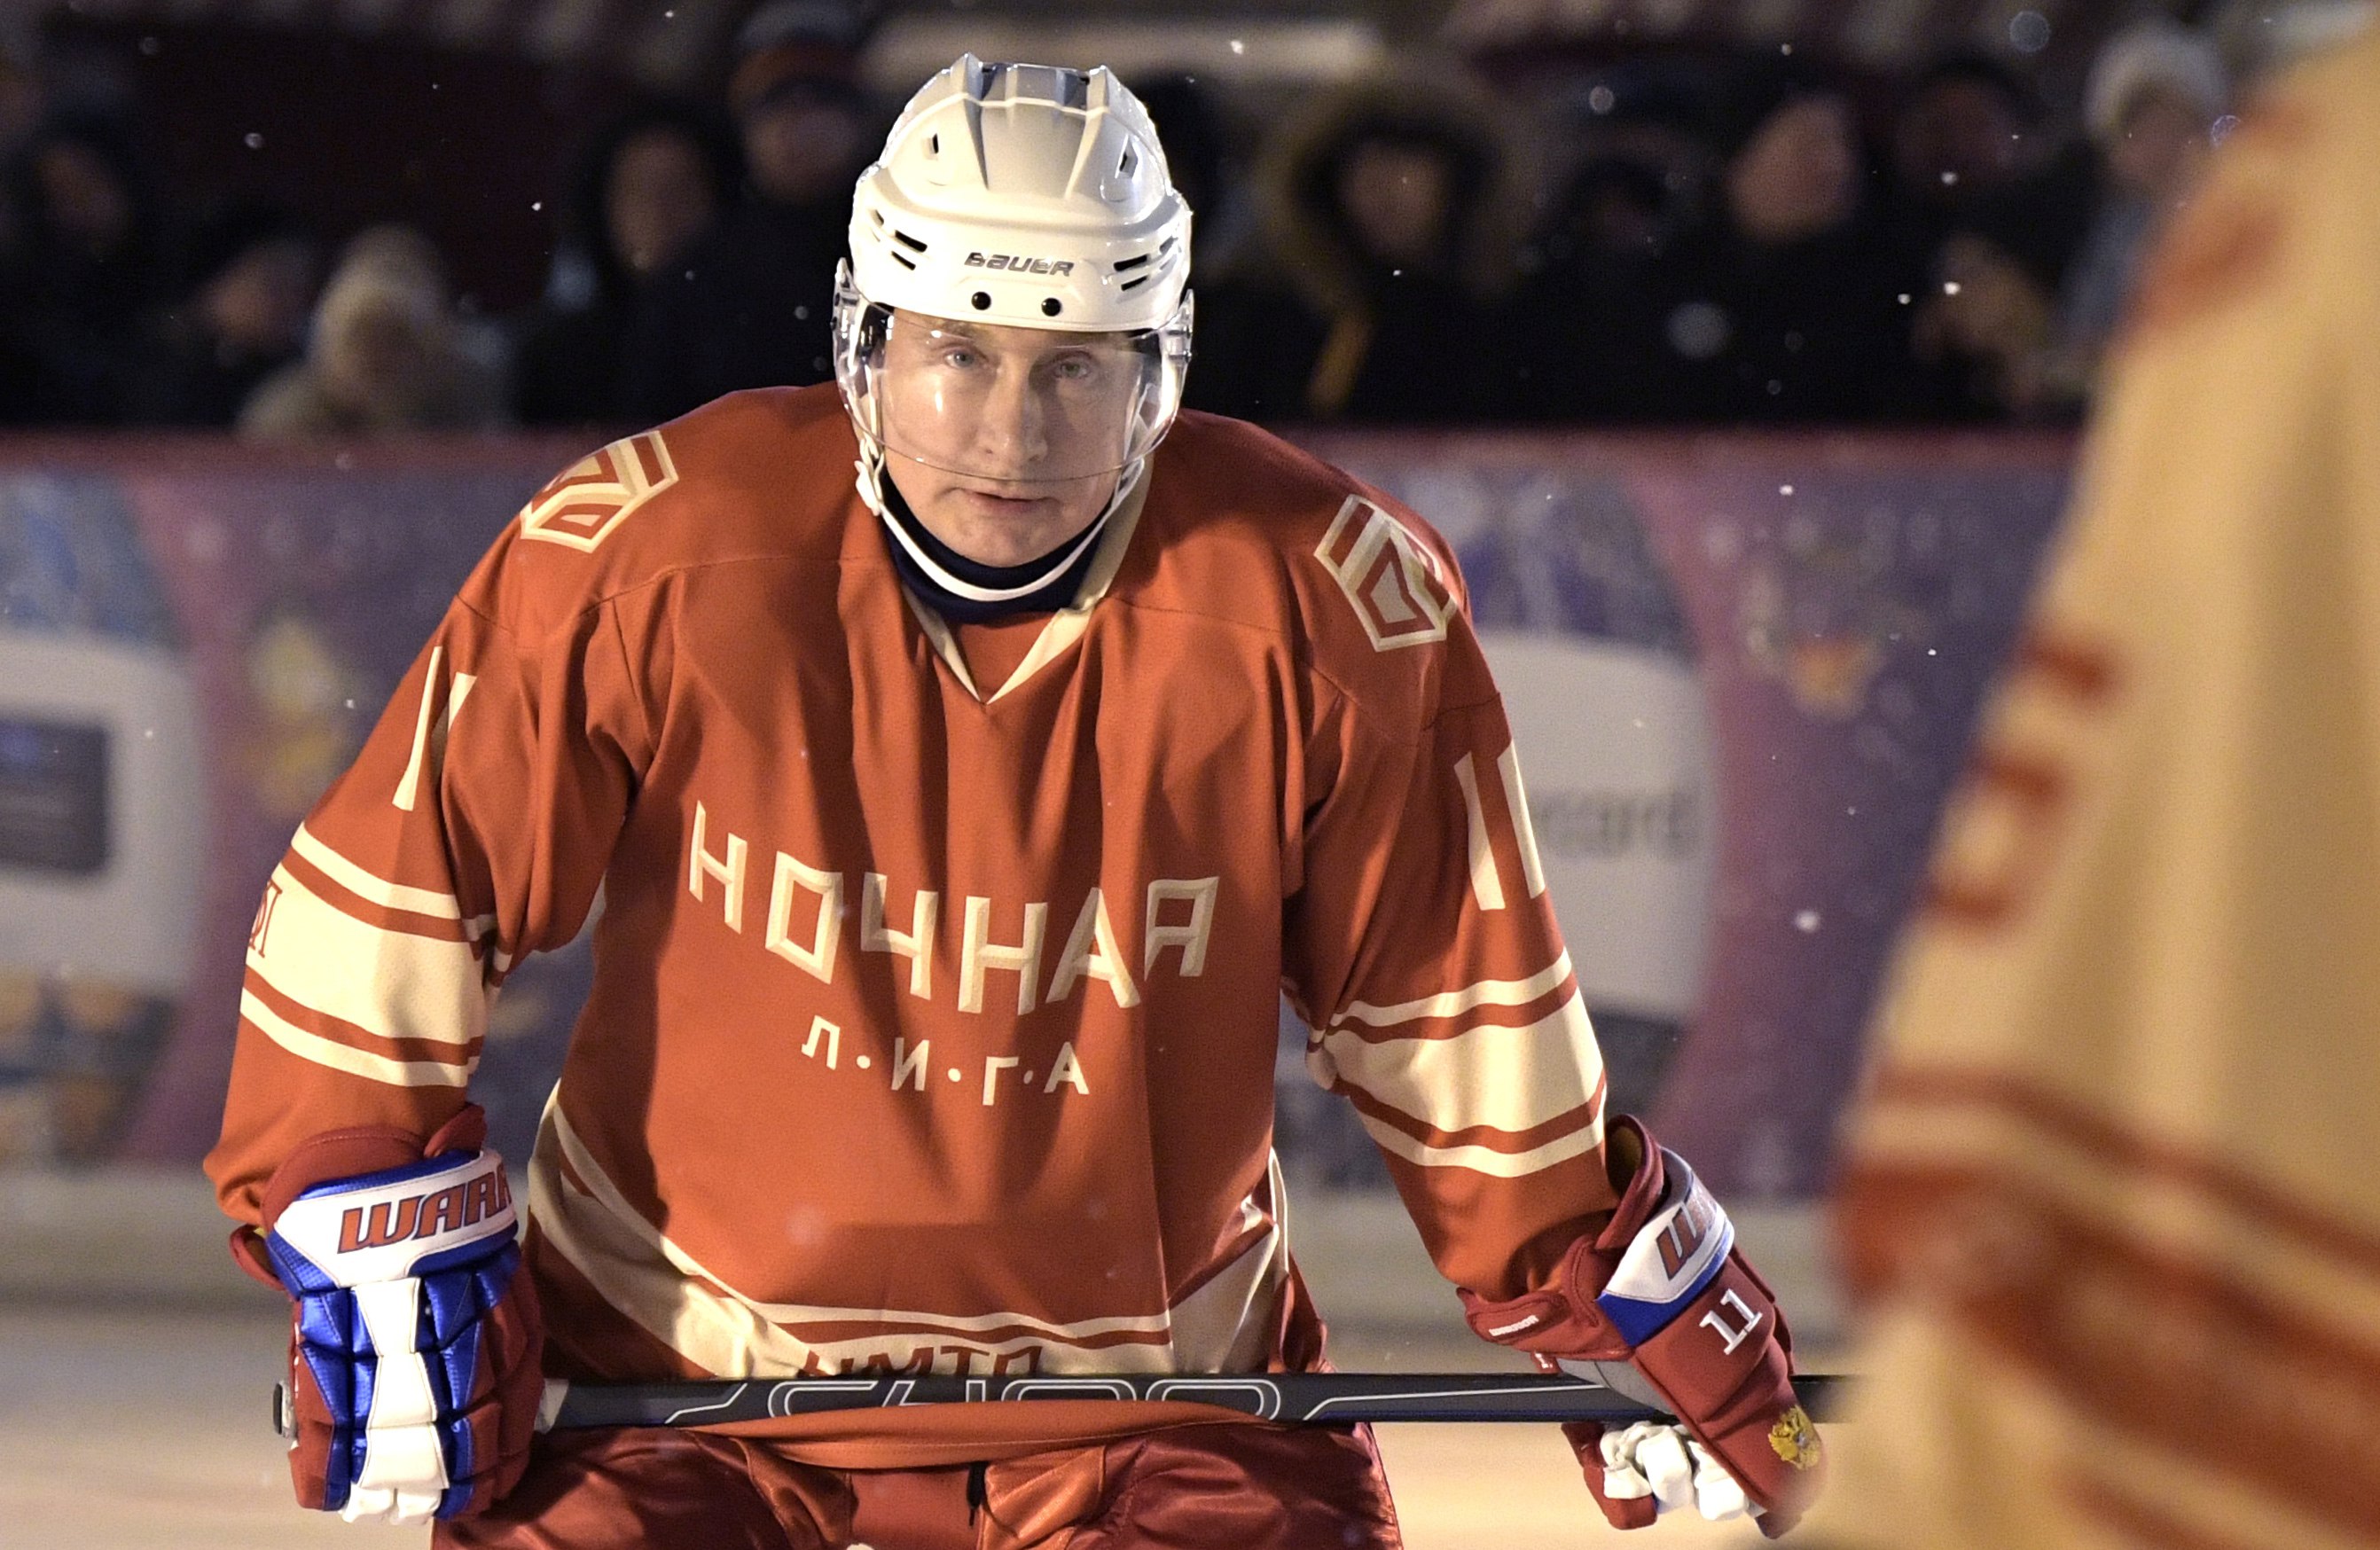 Πούτιν: Έπαιξε χόκεϊ επί πάγου στην Κόκκινη Πλατεία